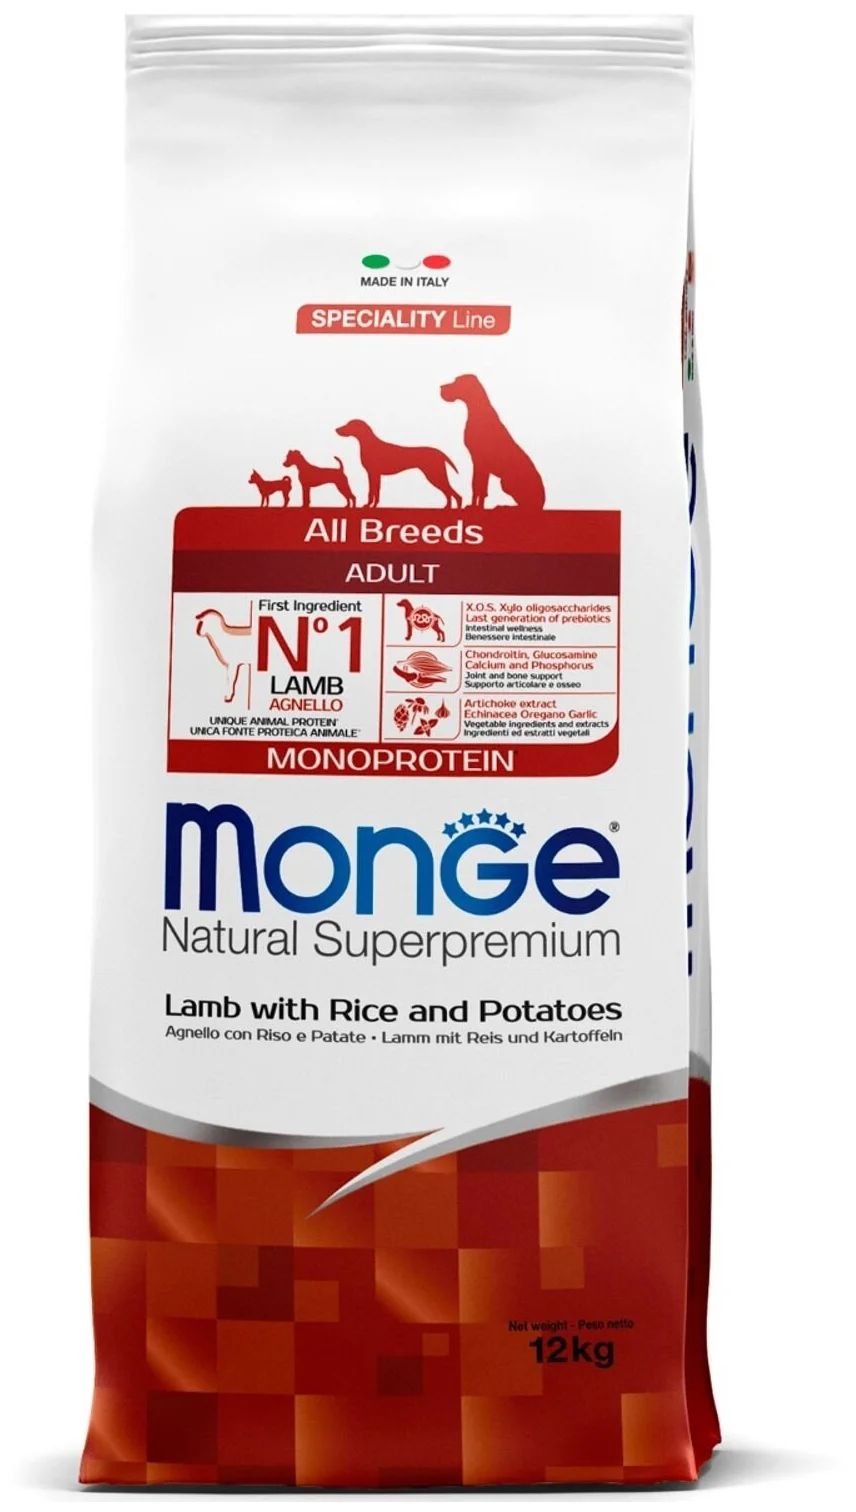 Сухой корм для собак Monge Speciality Line Adult, гипоаллергенный, с ягненком, 12кг